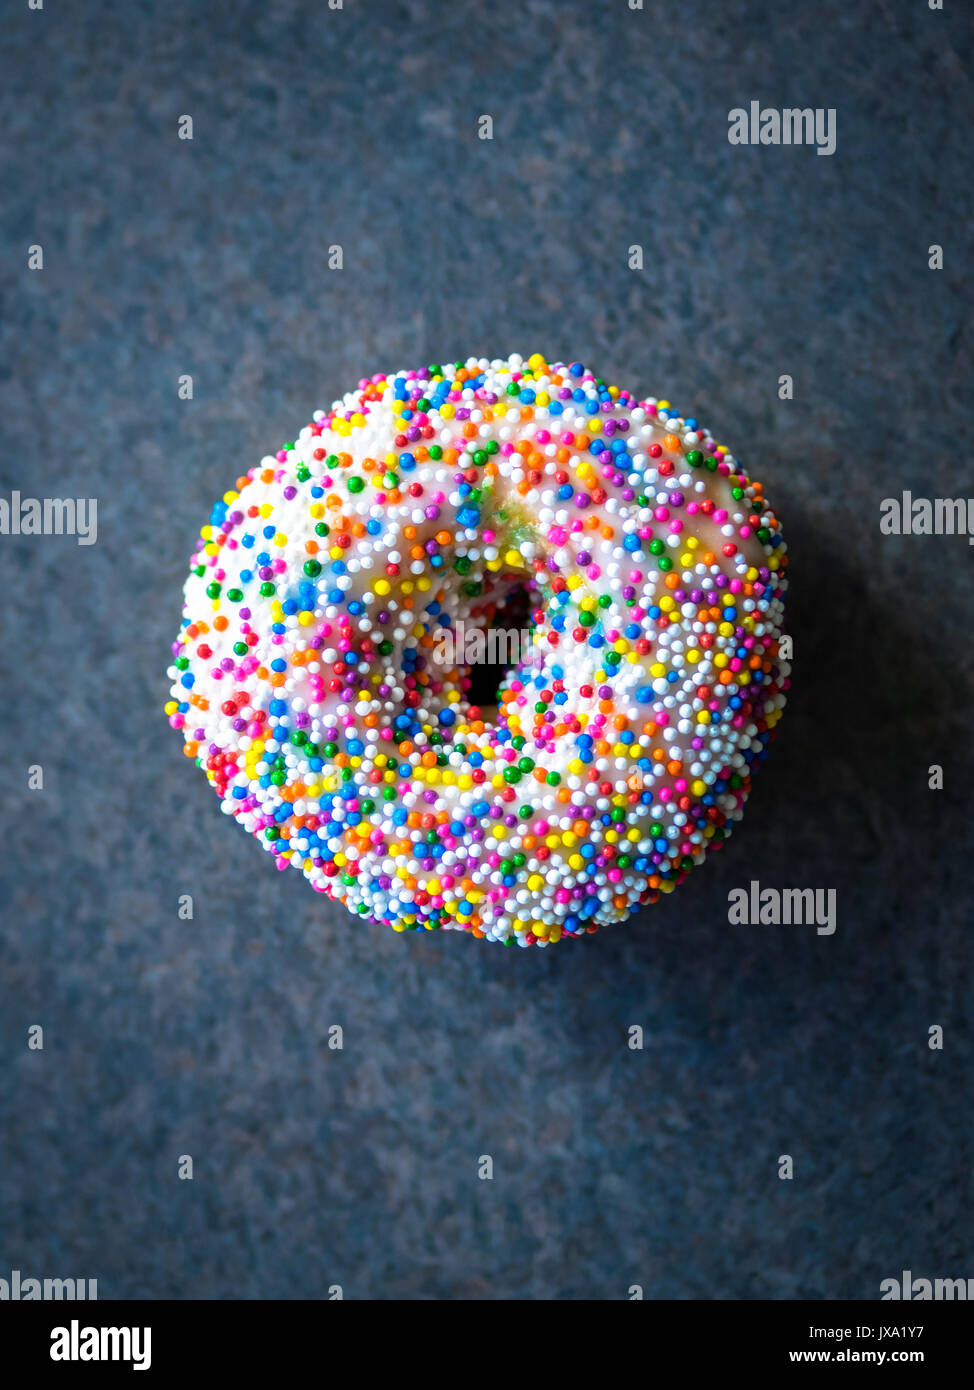 Un chapuzón de vainilla (rosquilla donut, espolvorear espolvorear rainbow donut) de Tim Hortons, un popular restaurante de comida rápida canadiense y donut shop. Foto de stock